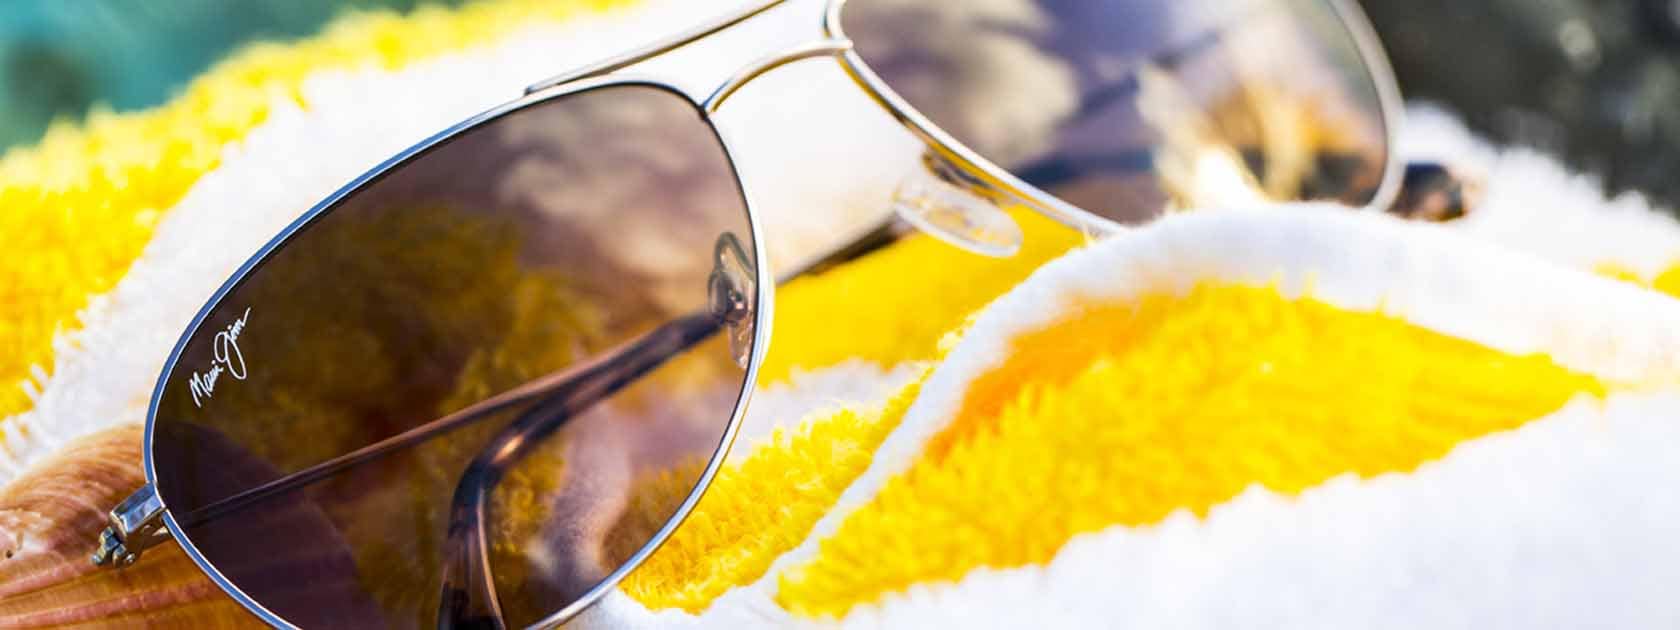 Piloten-Sonnenbrille mit silberfarbener Fassung mit grauen Gläsern auf gelbweiß gestreiftem Handtuch